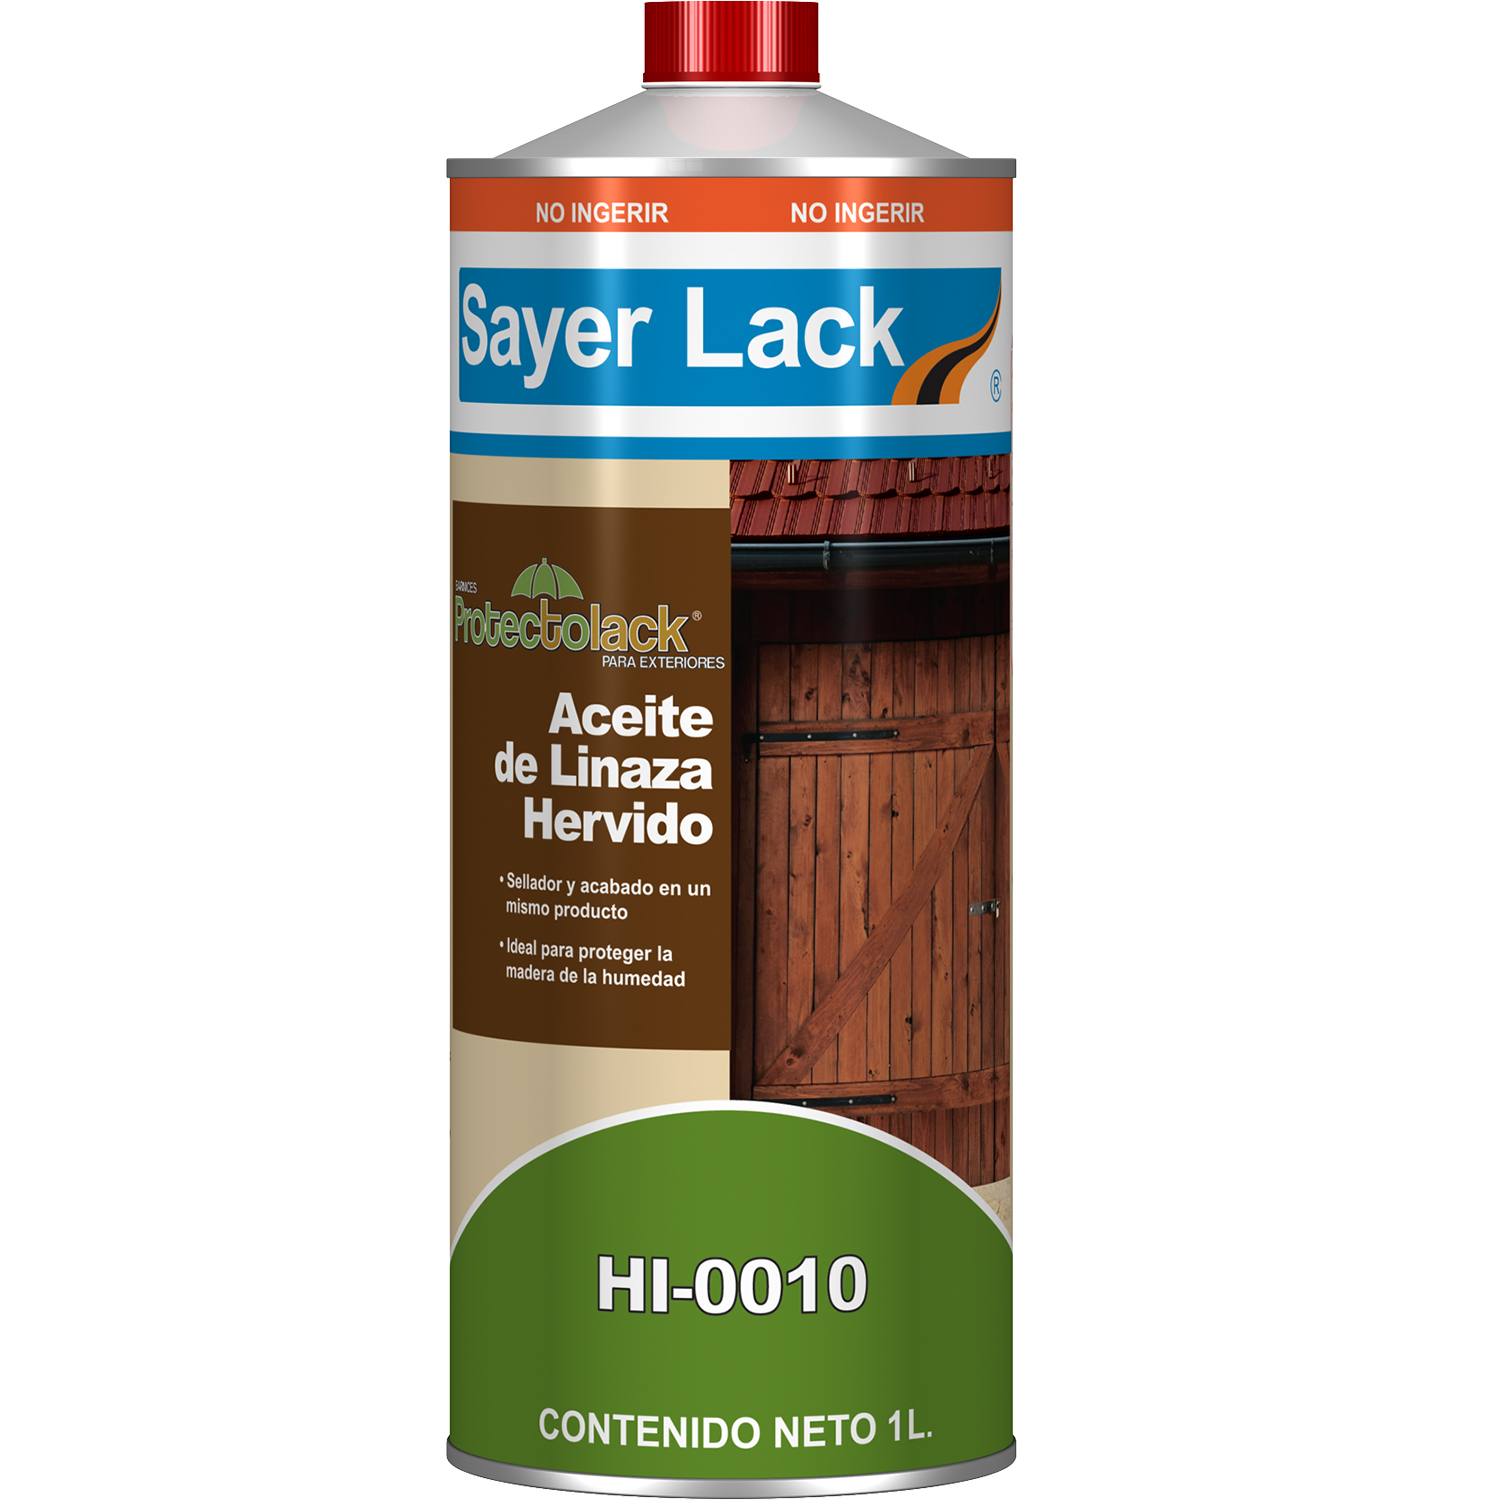  Aceite de linaza crudo sueco puro (1 galón) – Aceite de linaza  natural y puro – Madera rejuvenecedora – Nutre el revestimiento de madera  para muebles – Mezcla con pintura a